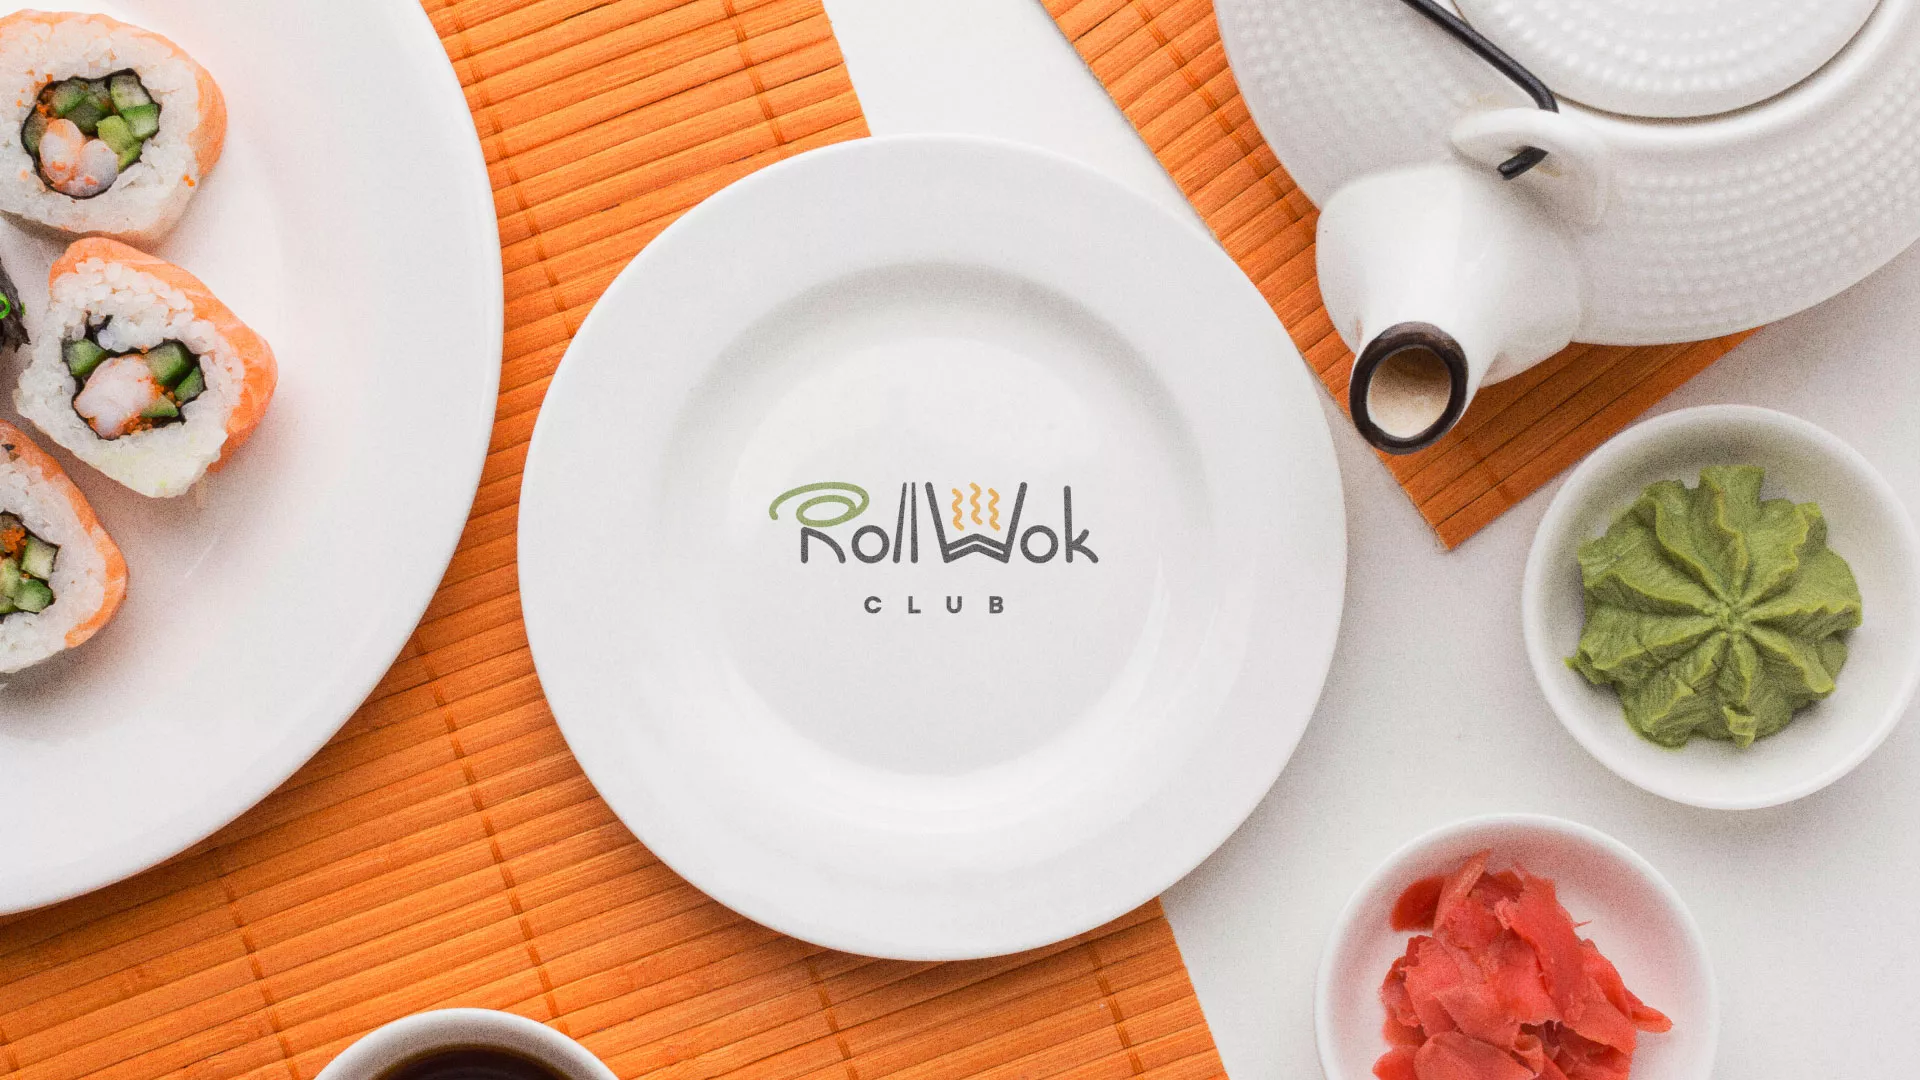 Разработка логотипа и фирменного стиля суши-бара «Roll Wok Club» в Мышкине